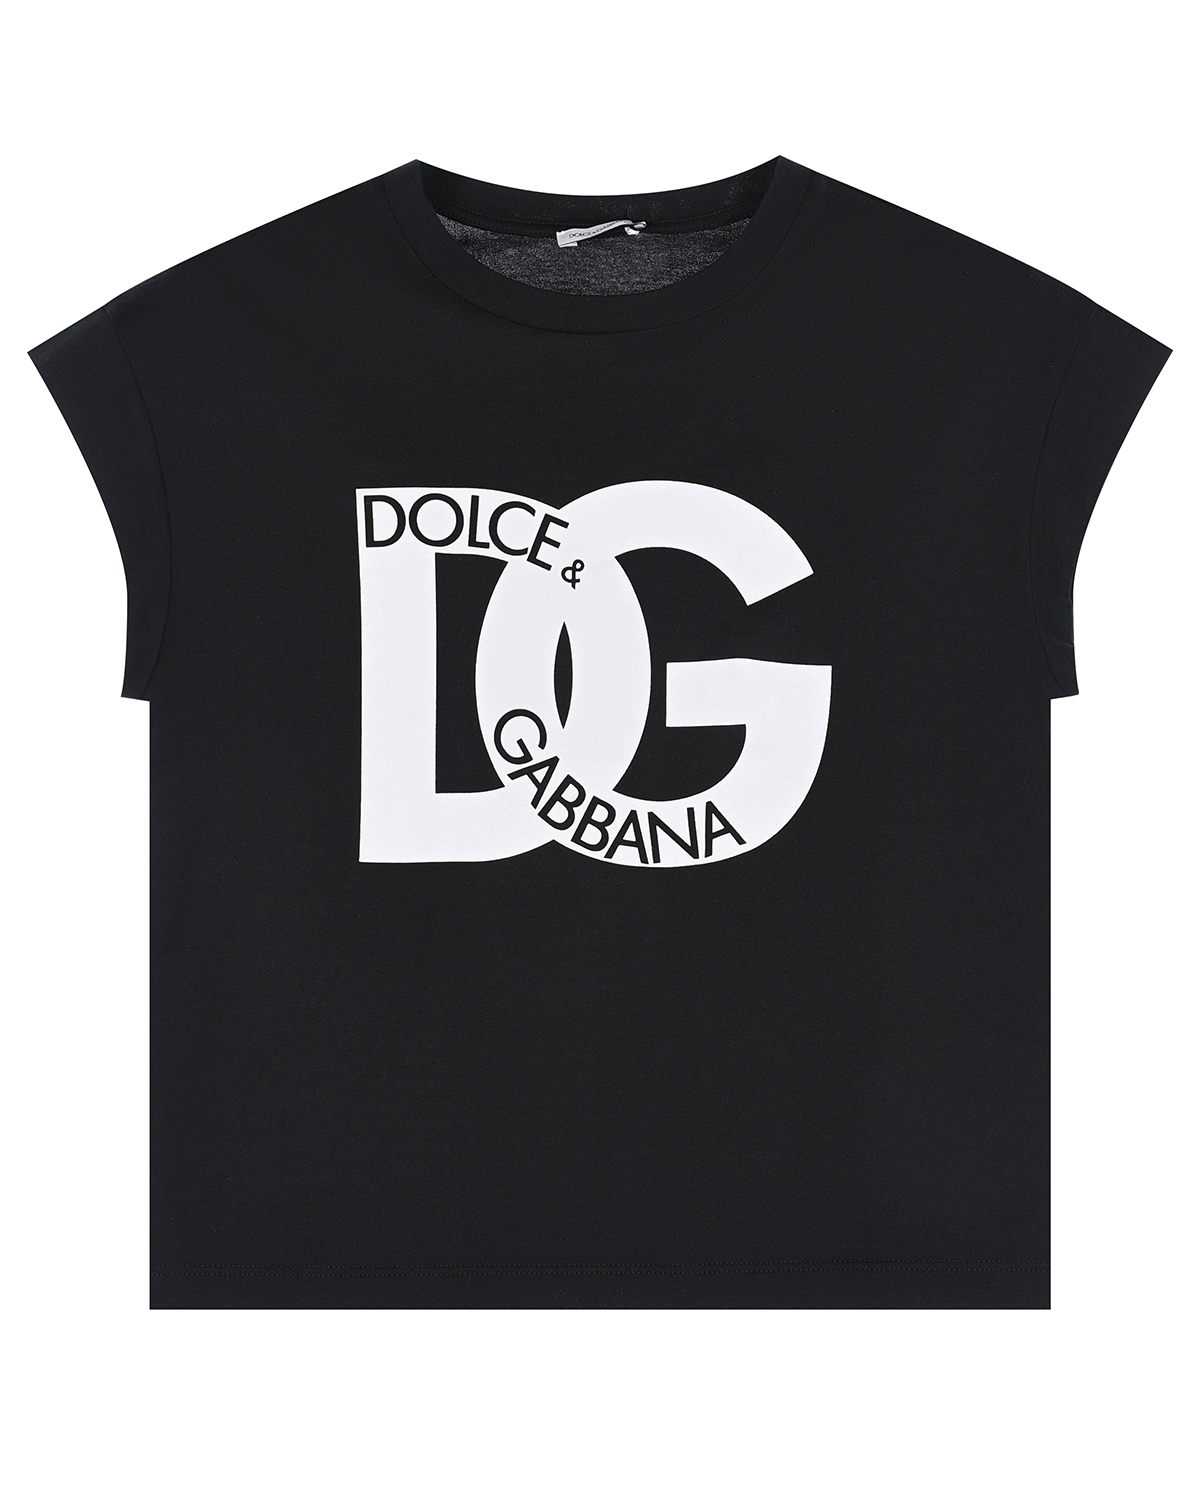 Черная футболка с крупным белым лого Dolce&Gabbana футболка со сплошным разноцветным лого dolce